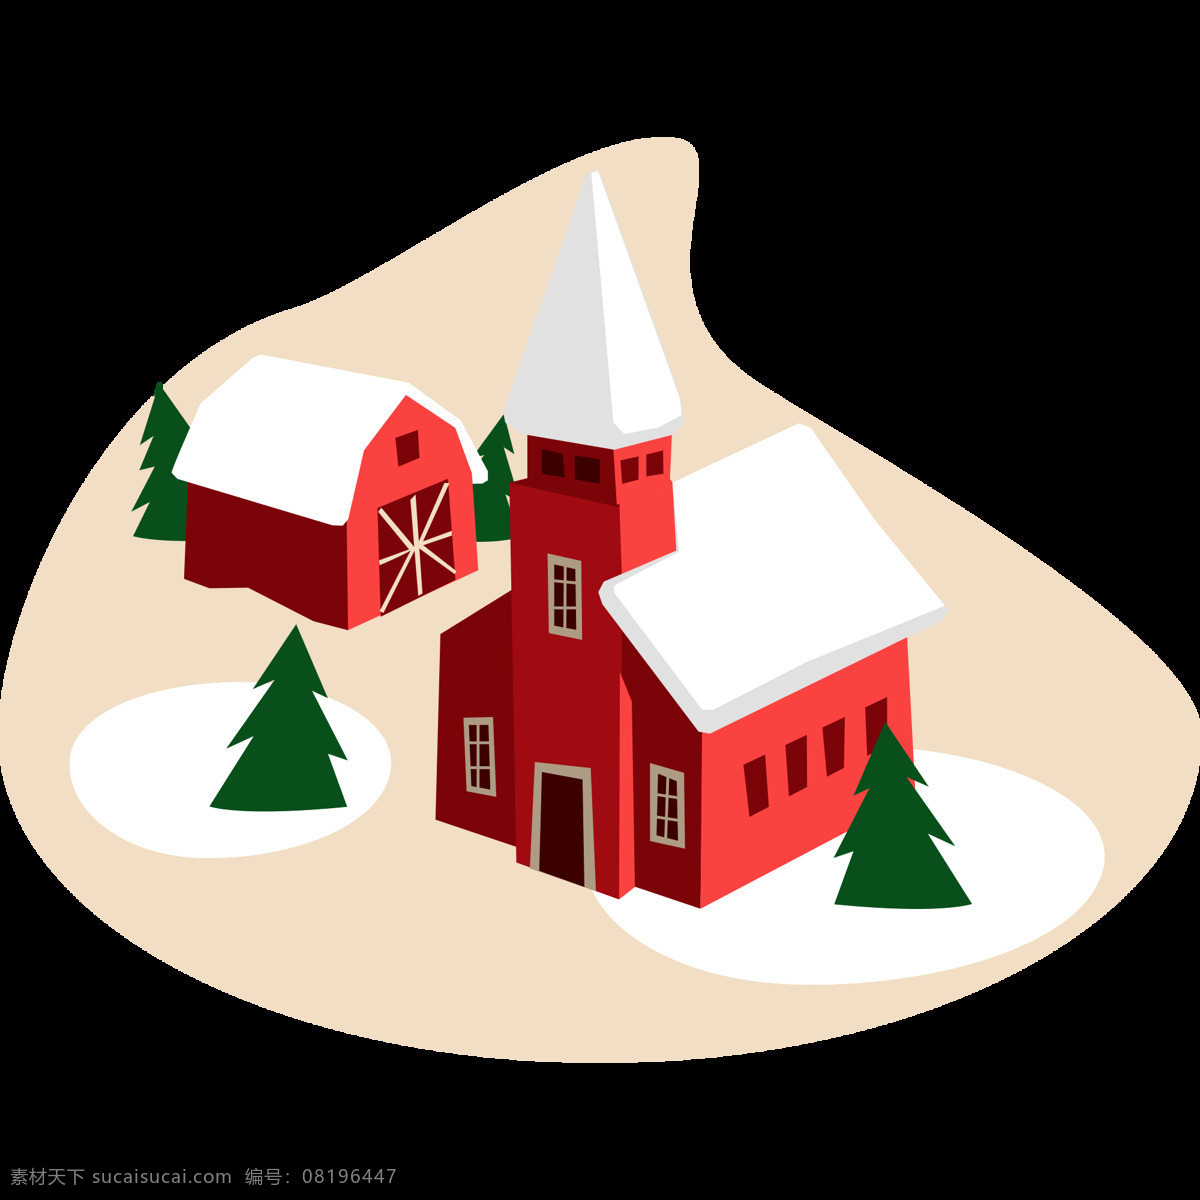 圣诞 元素 圣诞树 雪 房子 矢量 圣诞节 红房子 雪房子